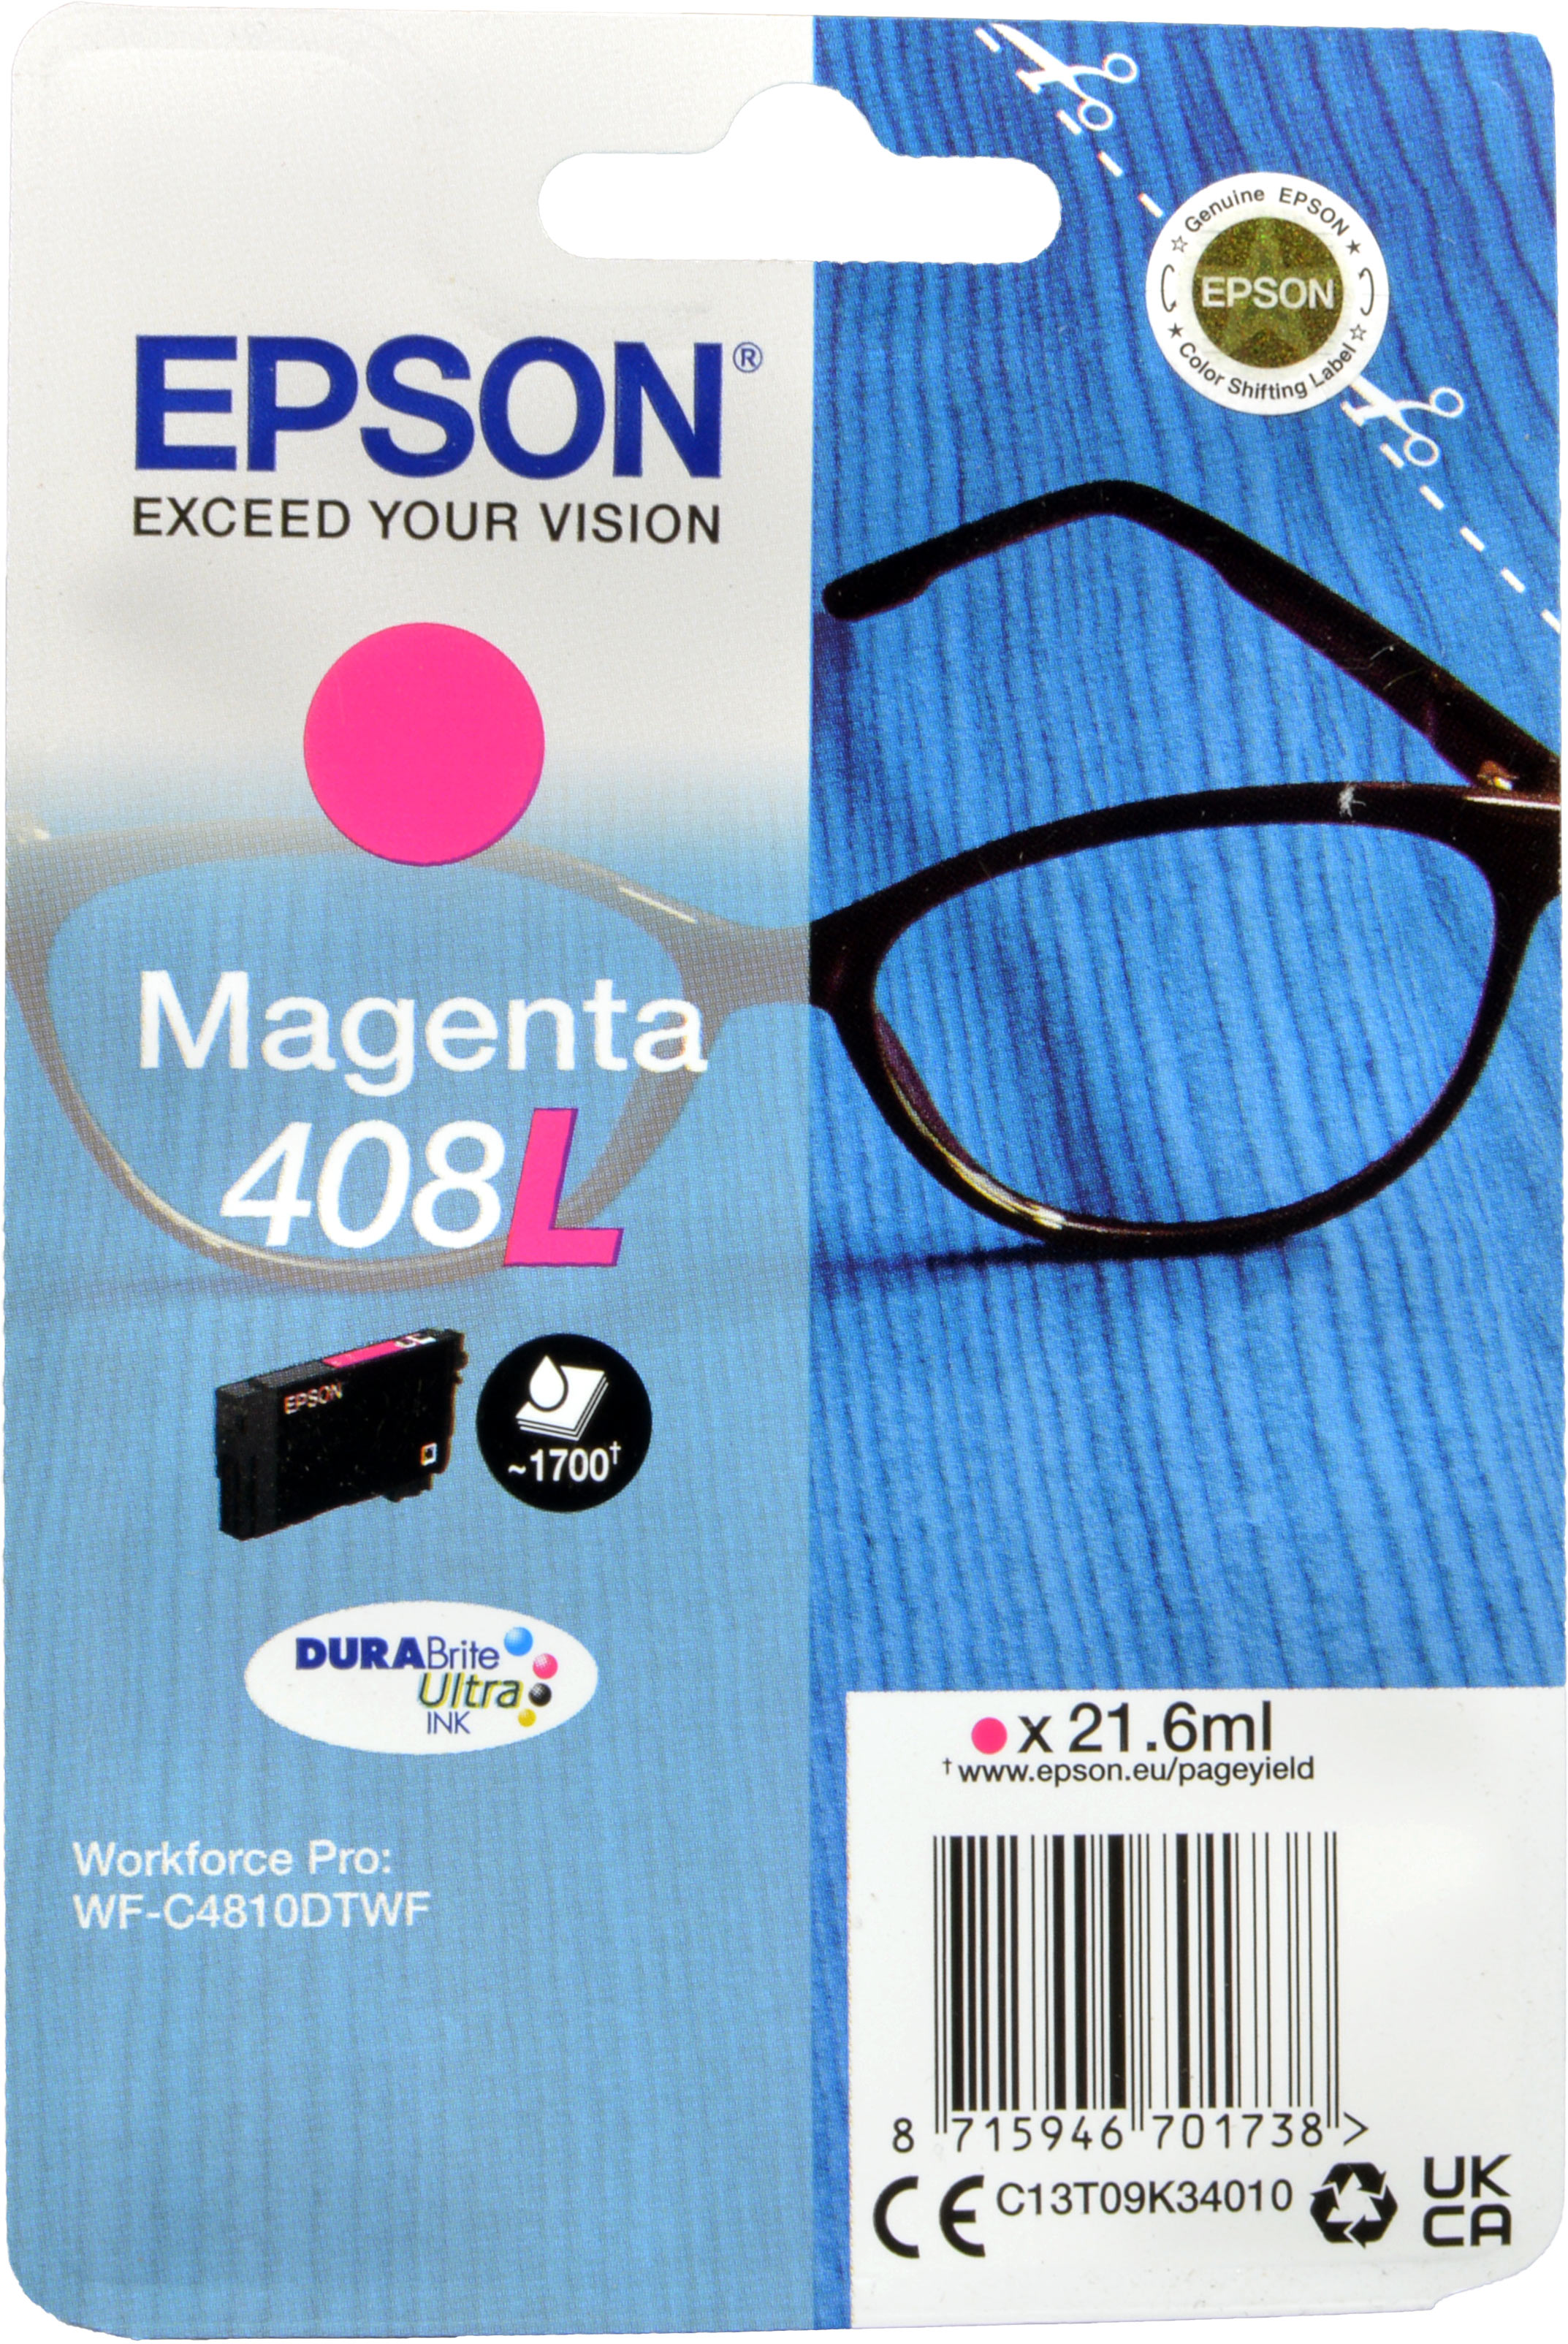 Epson Tinte C13T09K34010  Magenta 408L  magenta